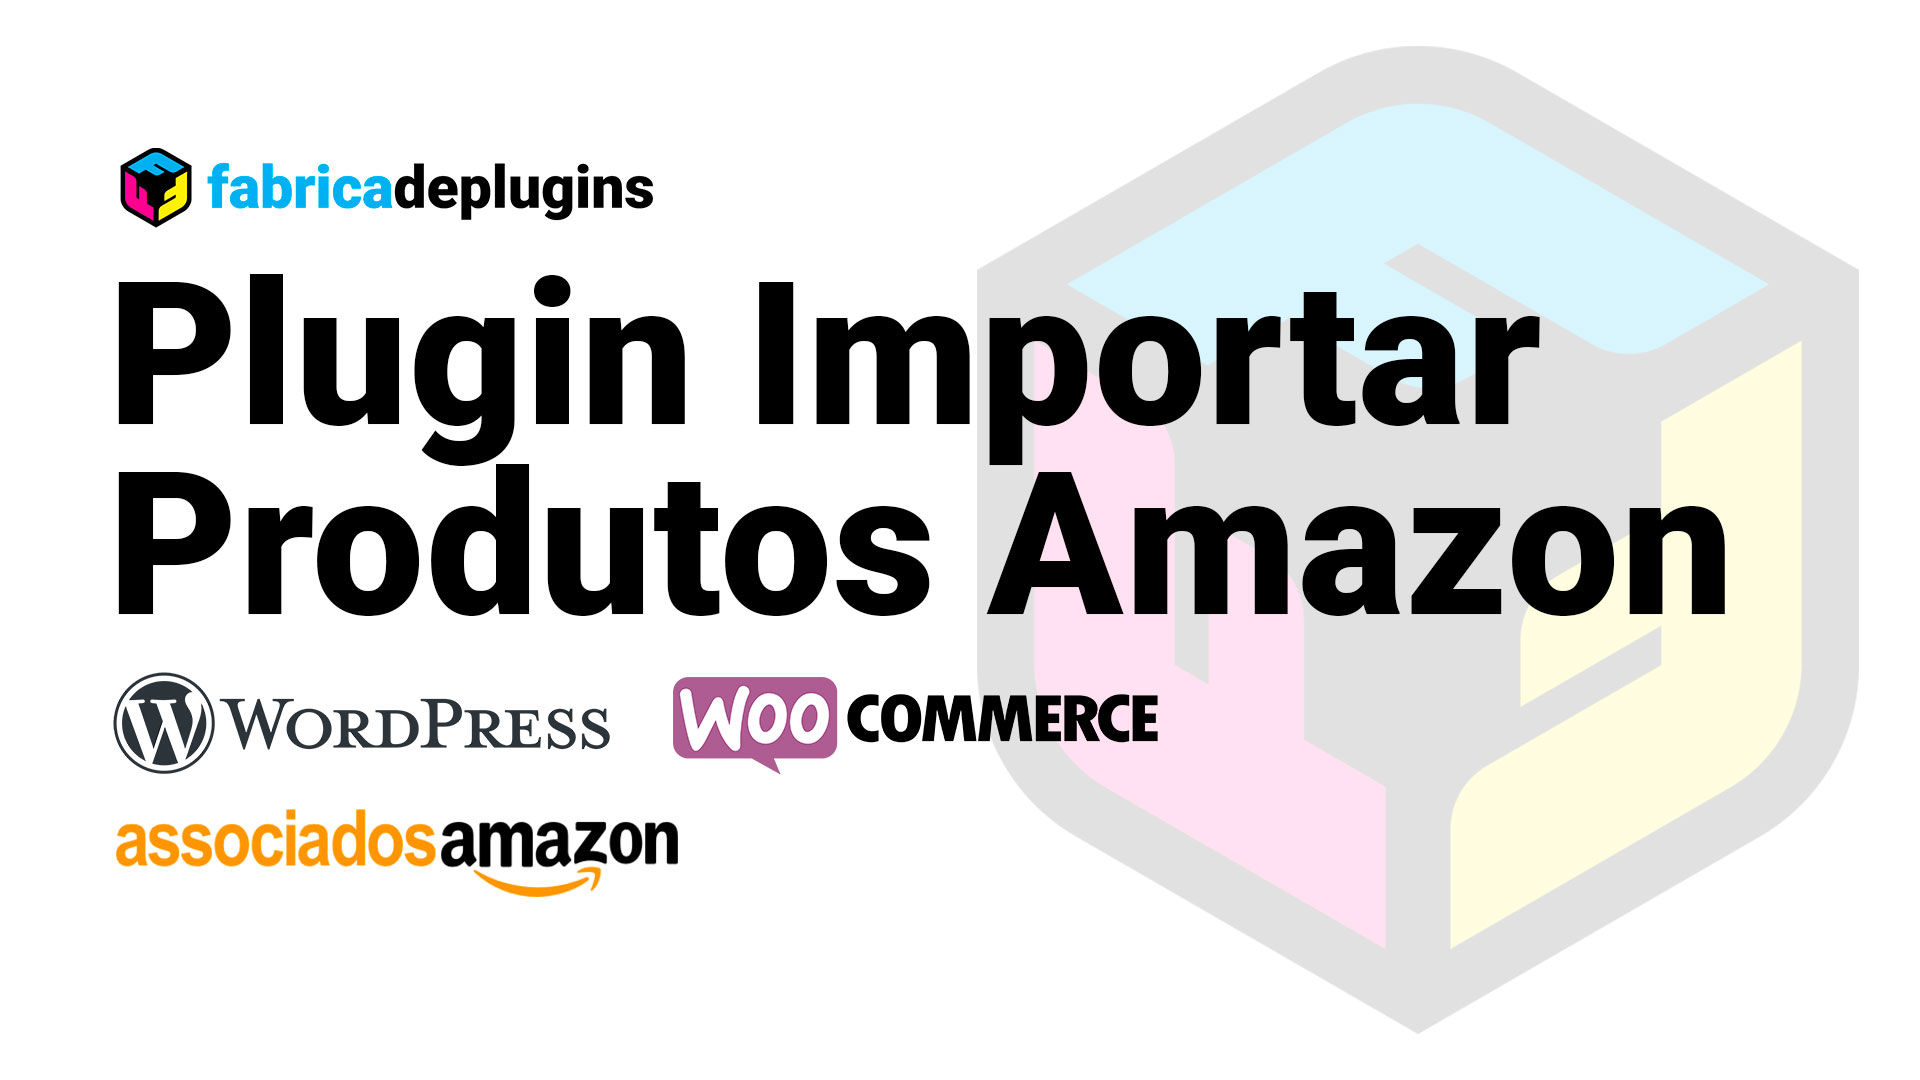 Plugin Fabrica de Plugins Importar Produtos Amazon: Recomendações sobre conteúdo